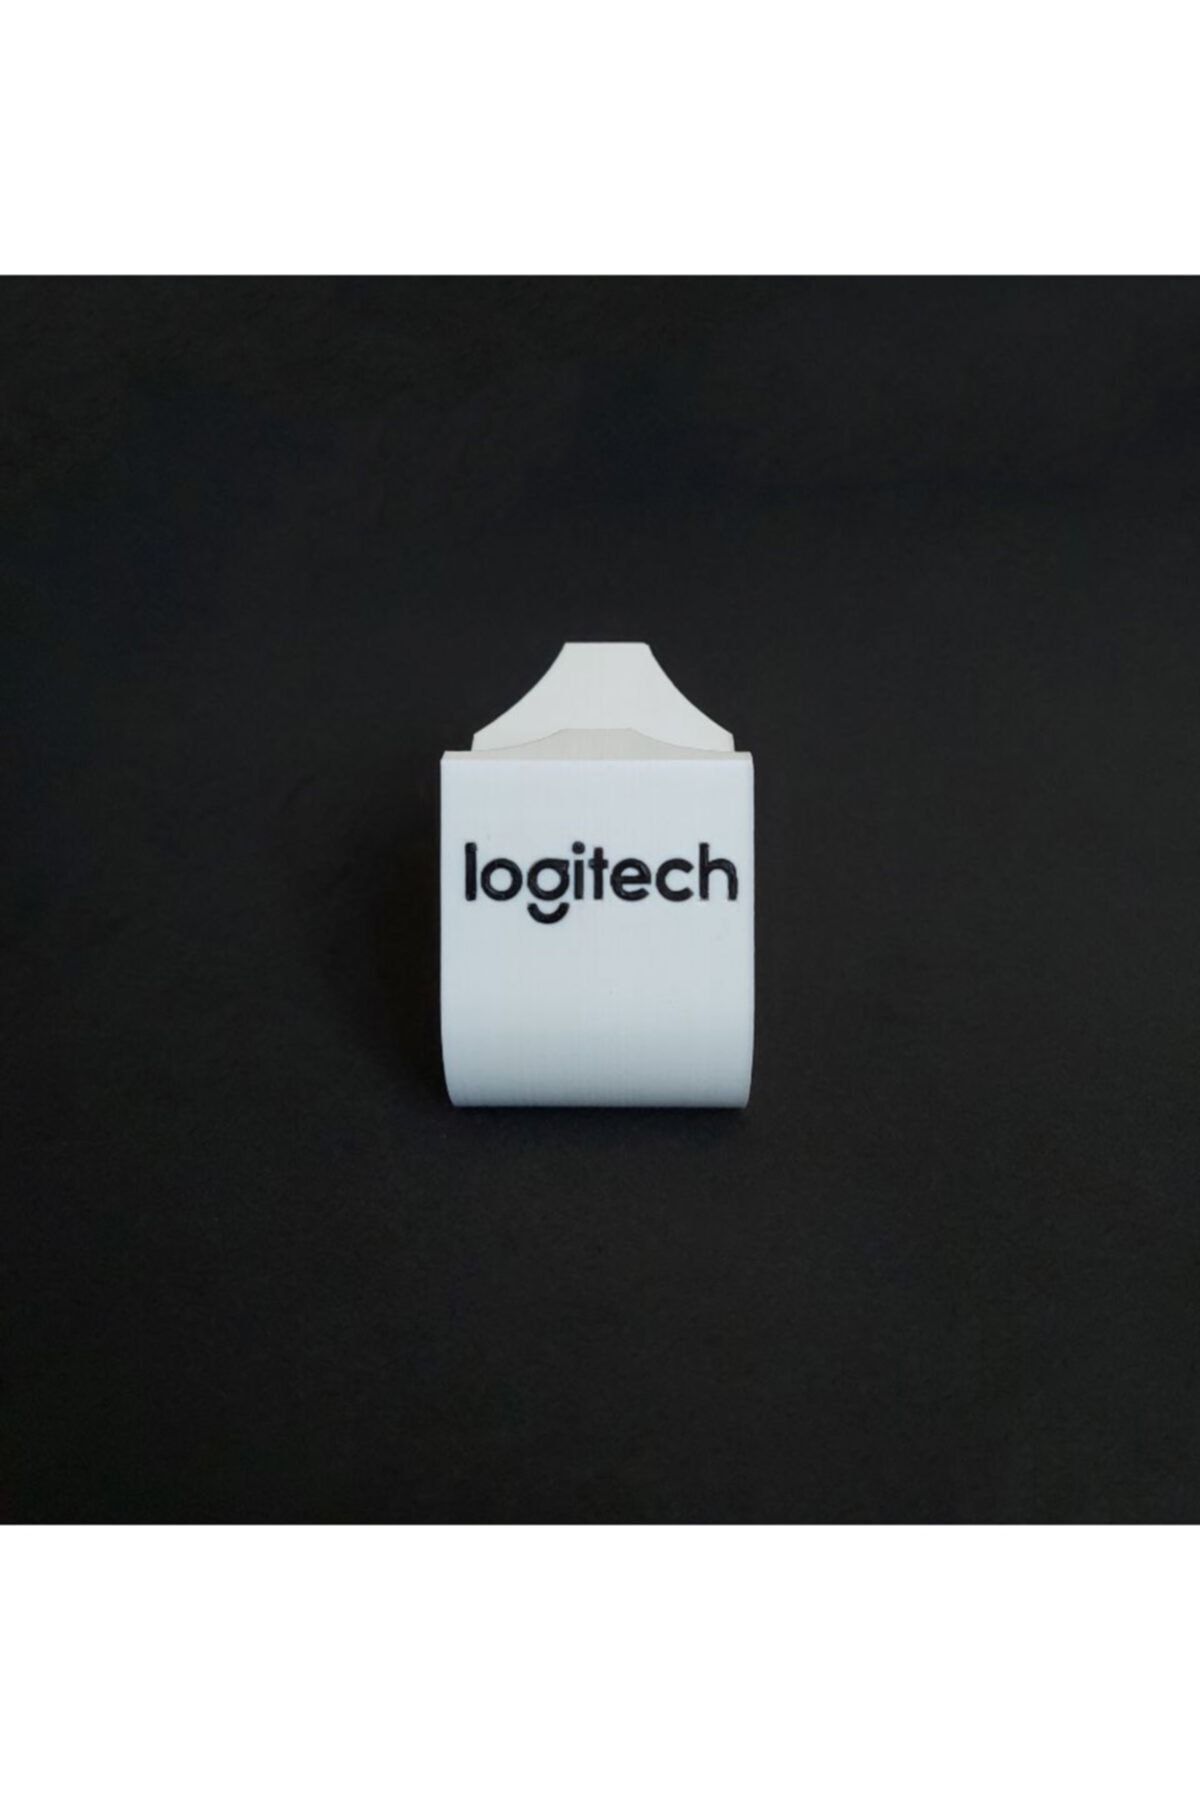 logitech F310 Controller Stand